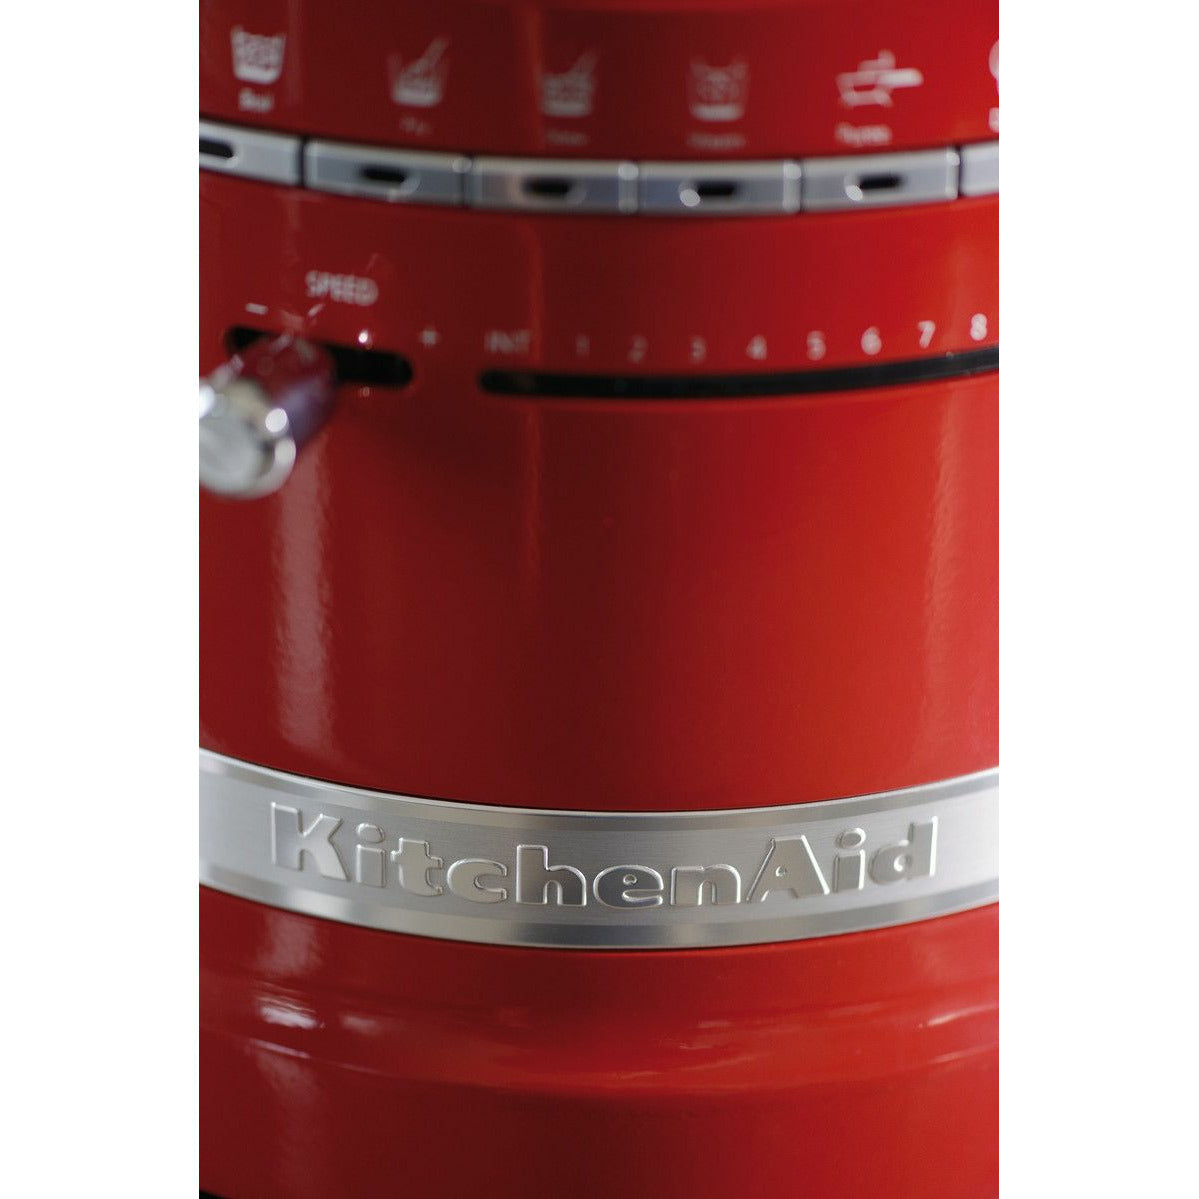 KitchenAid 5KCF0104 Artisan Cook Processor, Red Metallic